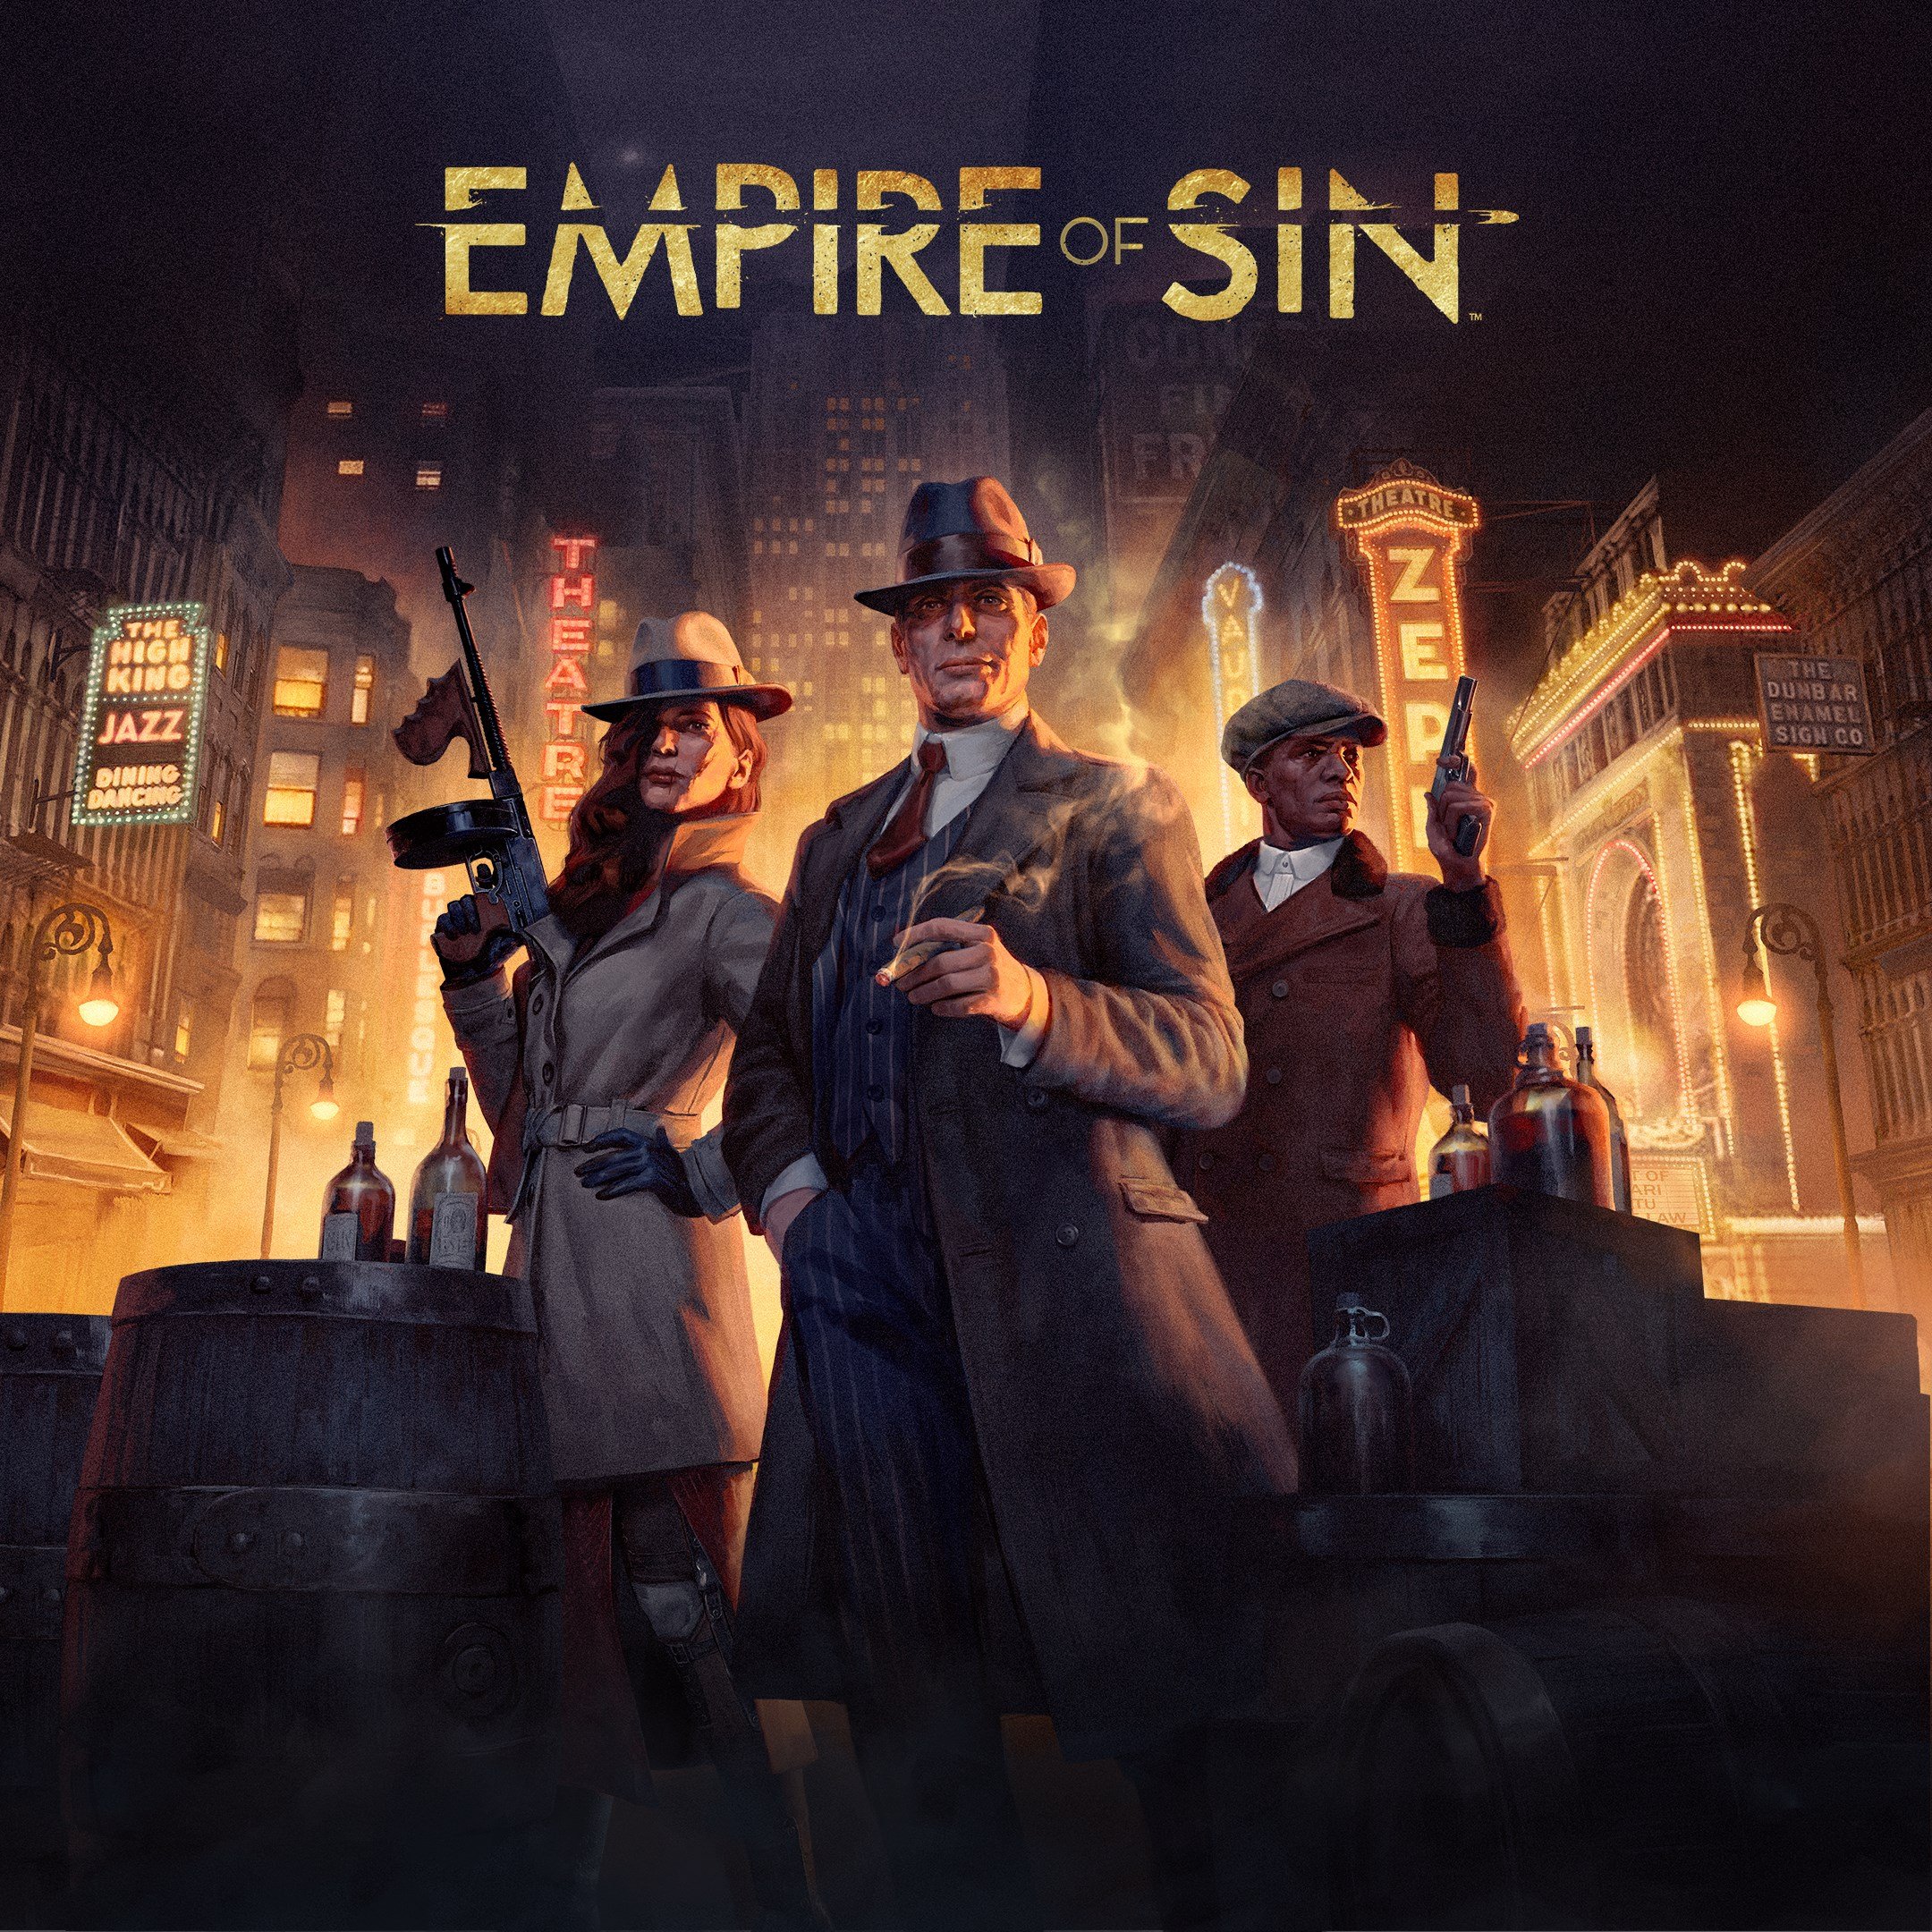 Empire of Sin - Microsoft Store Edition